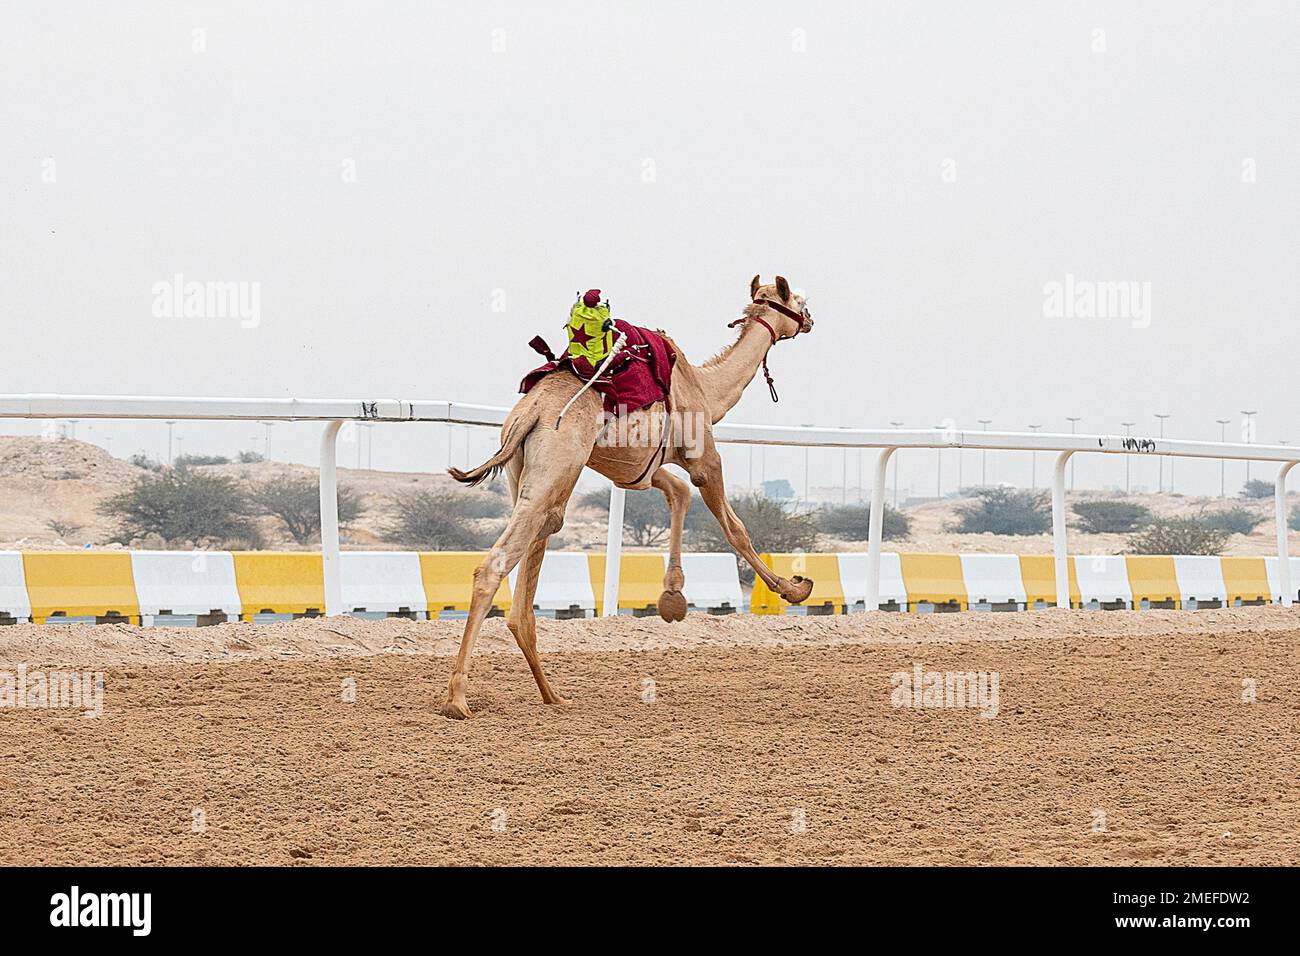 Circuit de course de chameau Shehania Doha Qatar. Culture arabe traditionnelle du Qatar Banque D'Images